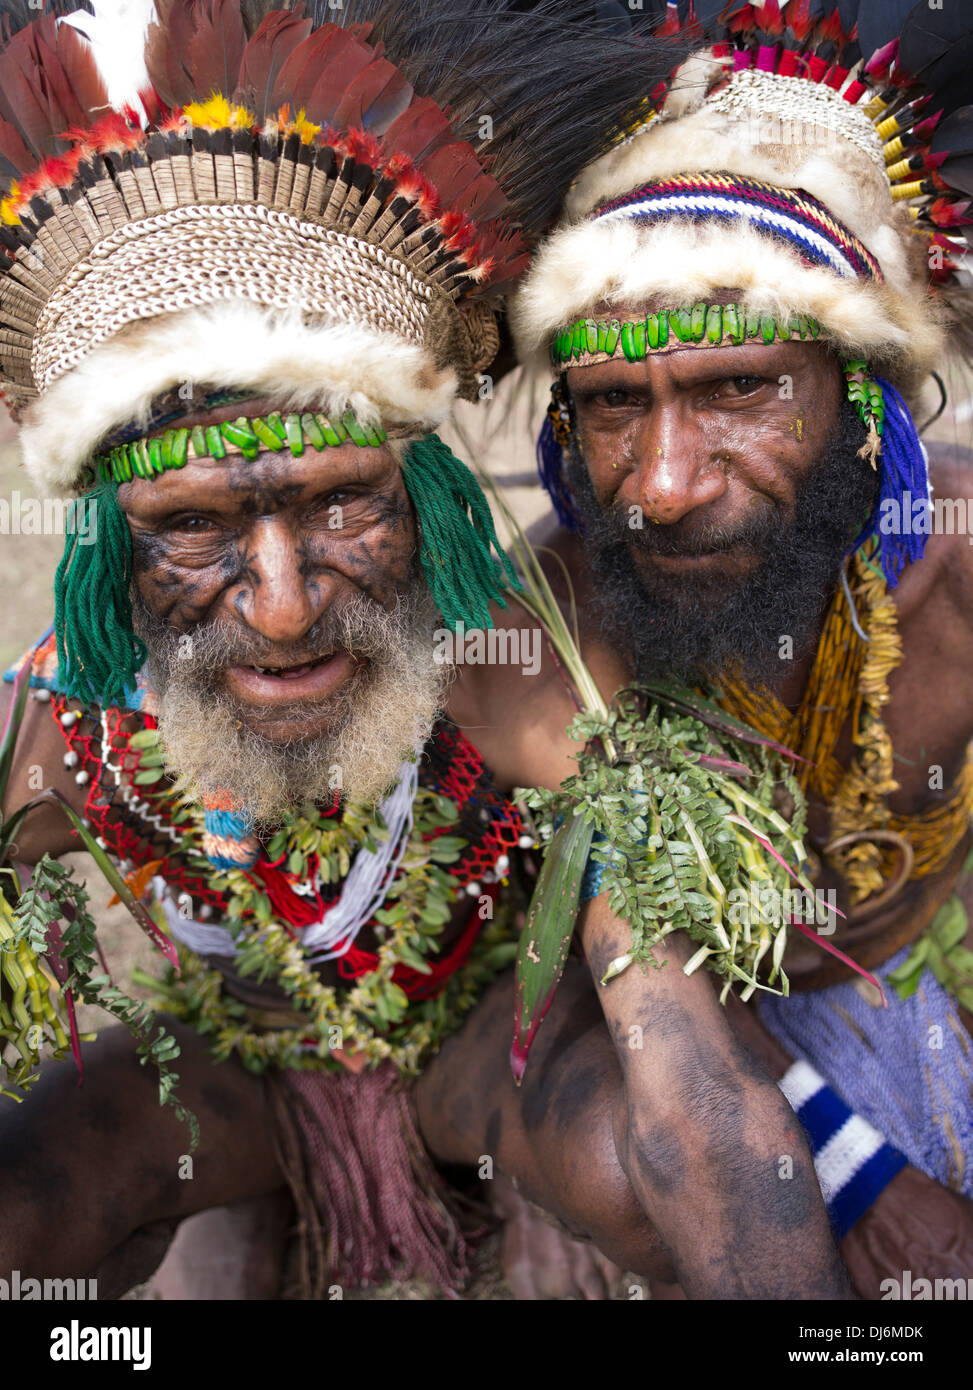 Les hommes des tribus avec coiffe et barbes à Goroka Show Singsing Festival culturel, la Papouasie-Nouvelle-Guinée. Tatouage visage on elder Banque D'Images